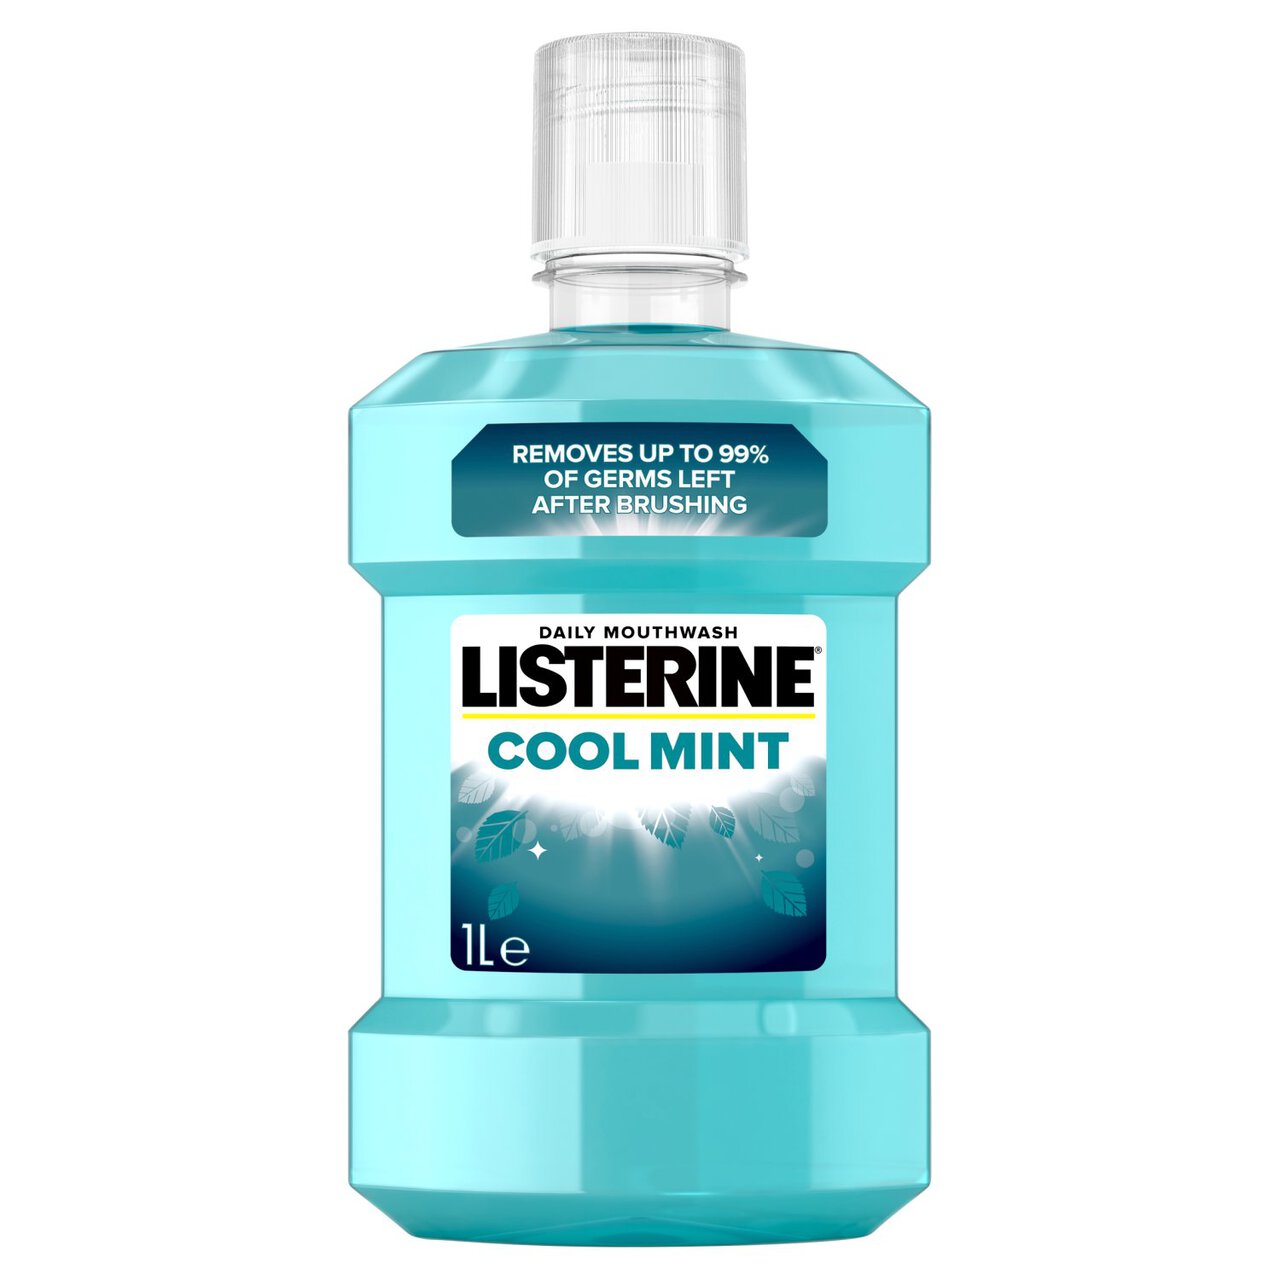 Listerine Cool Mint Mouthwash 1l